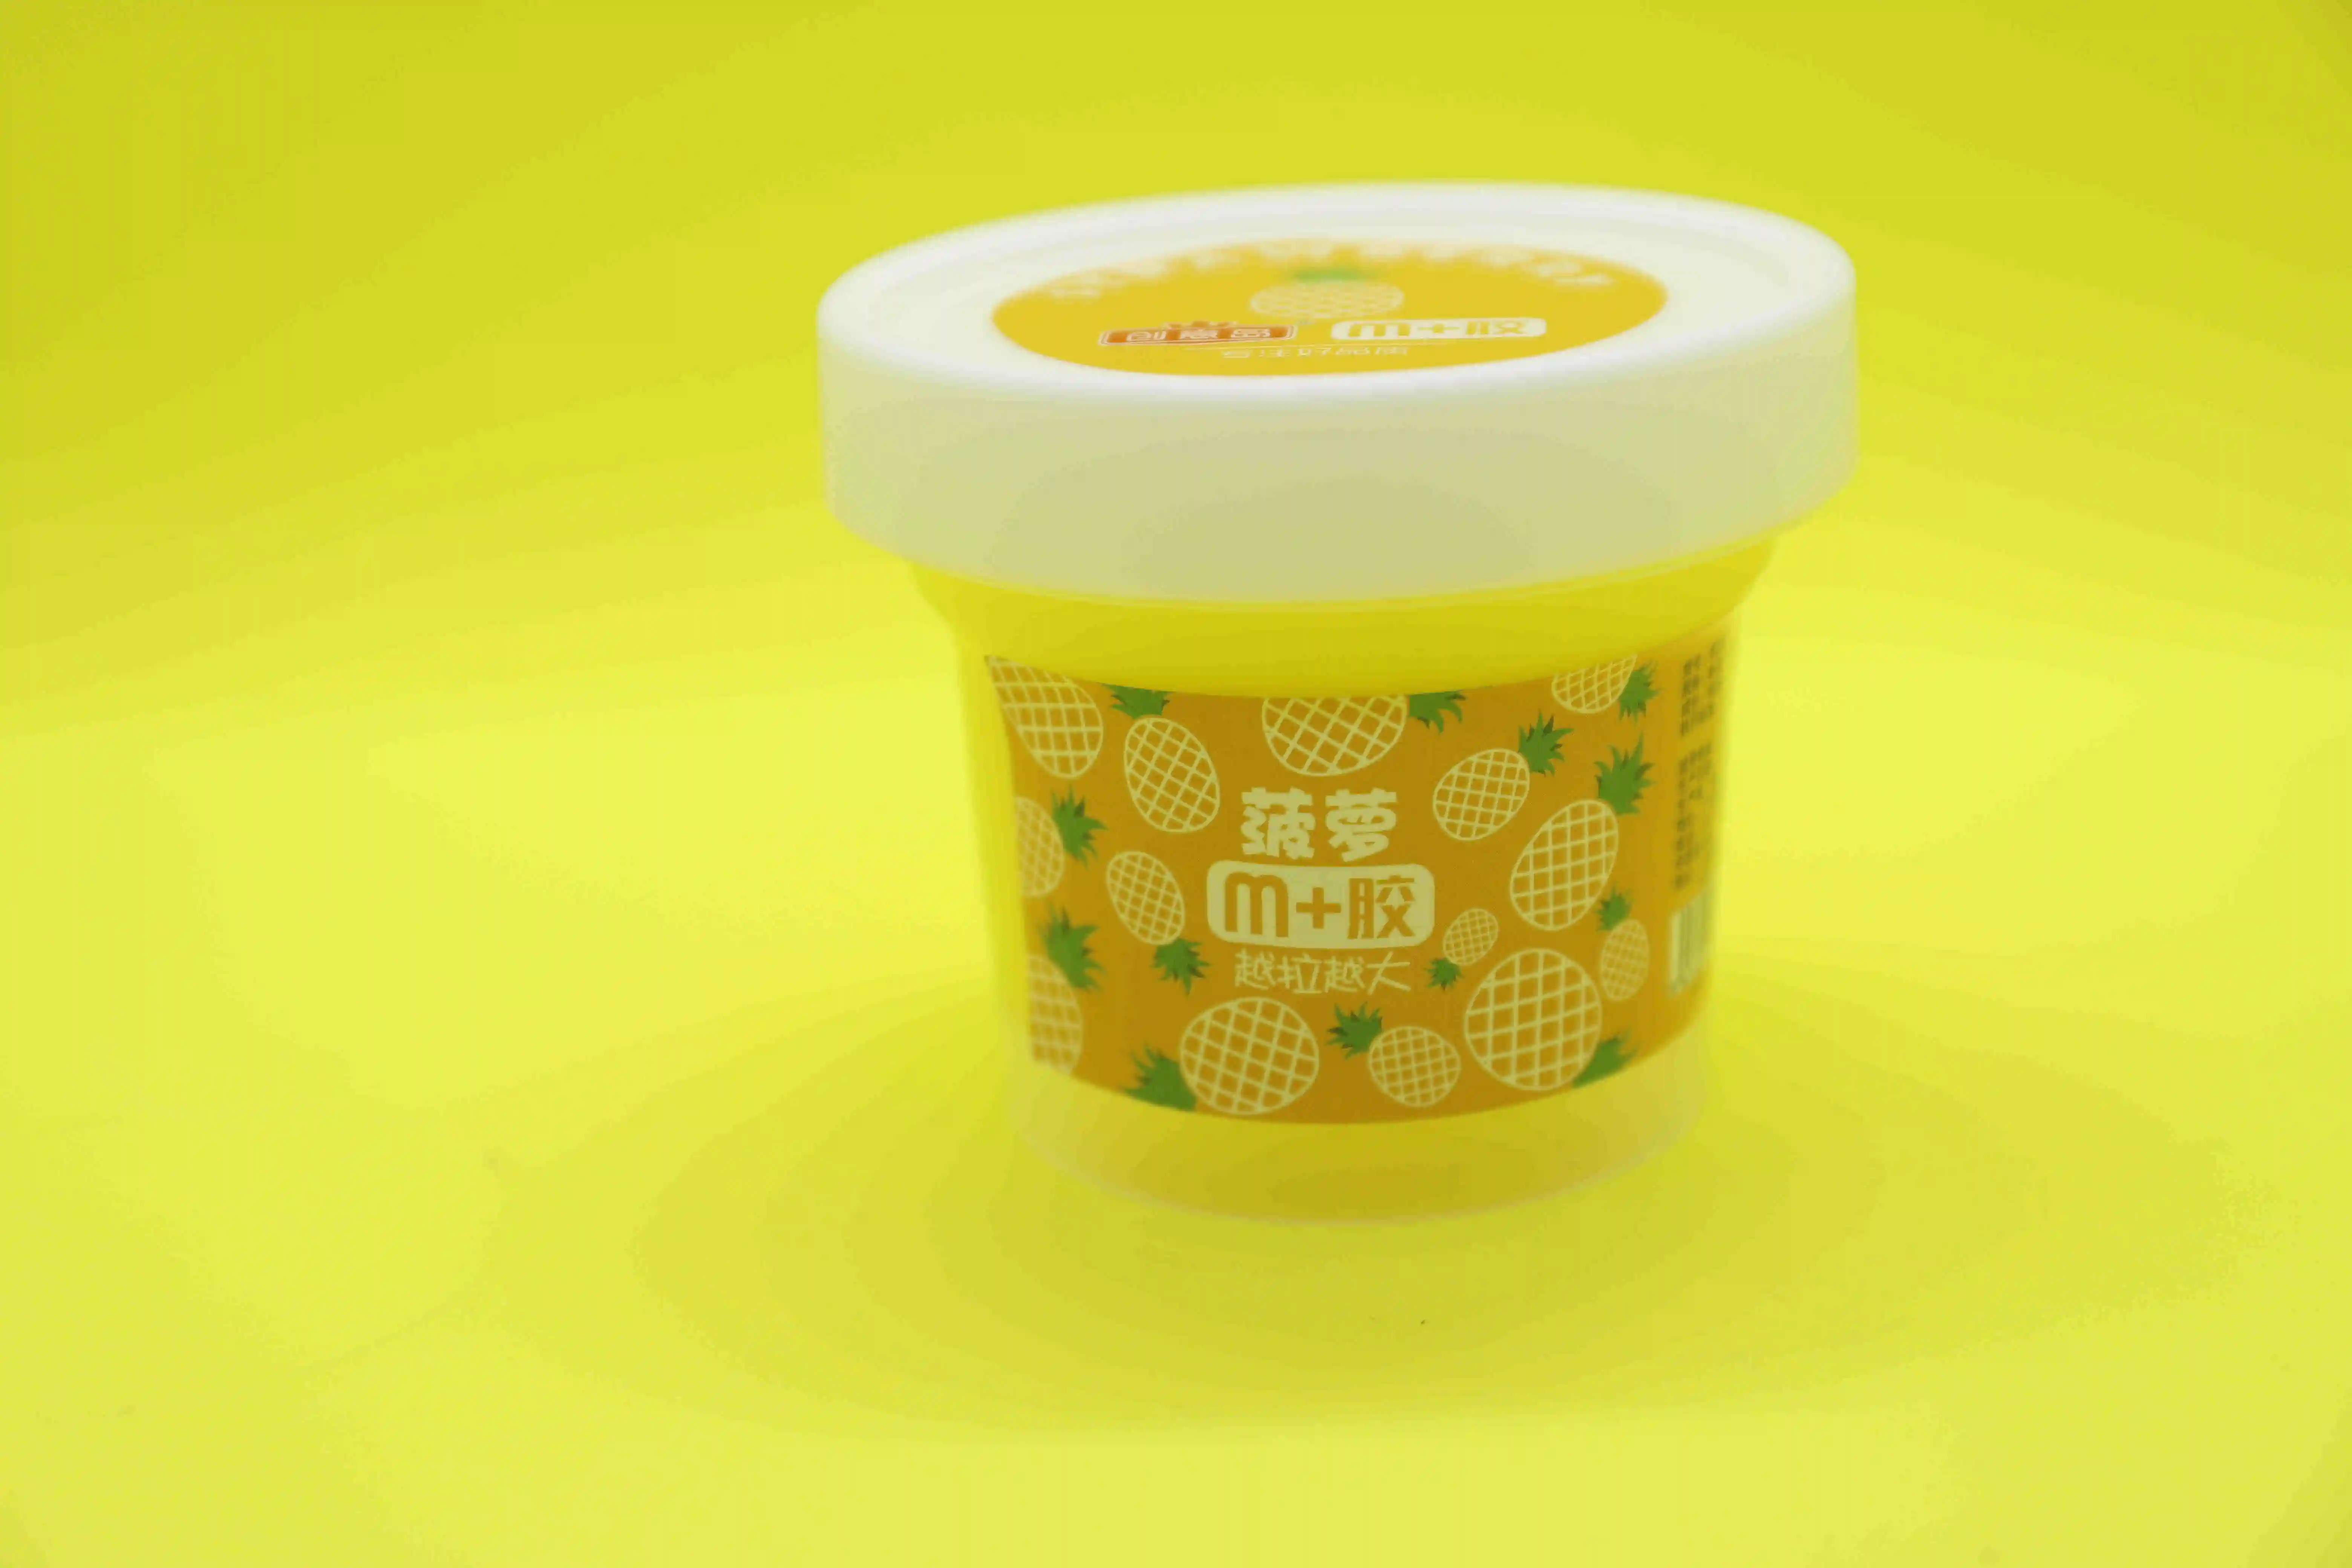 Designed Especially Sensory Magic Foamic Bulk Colourful Slime Kit Ice Cream Play Dough